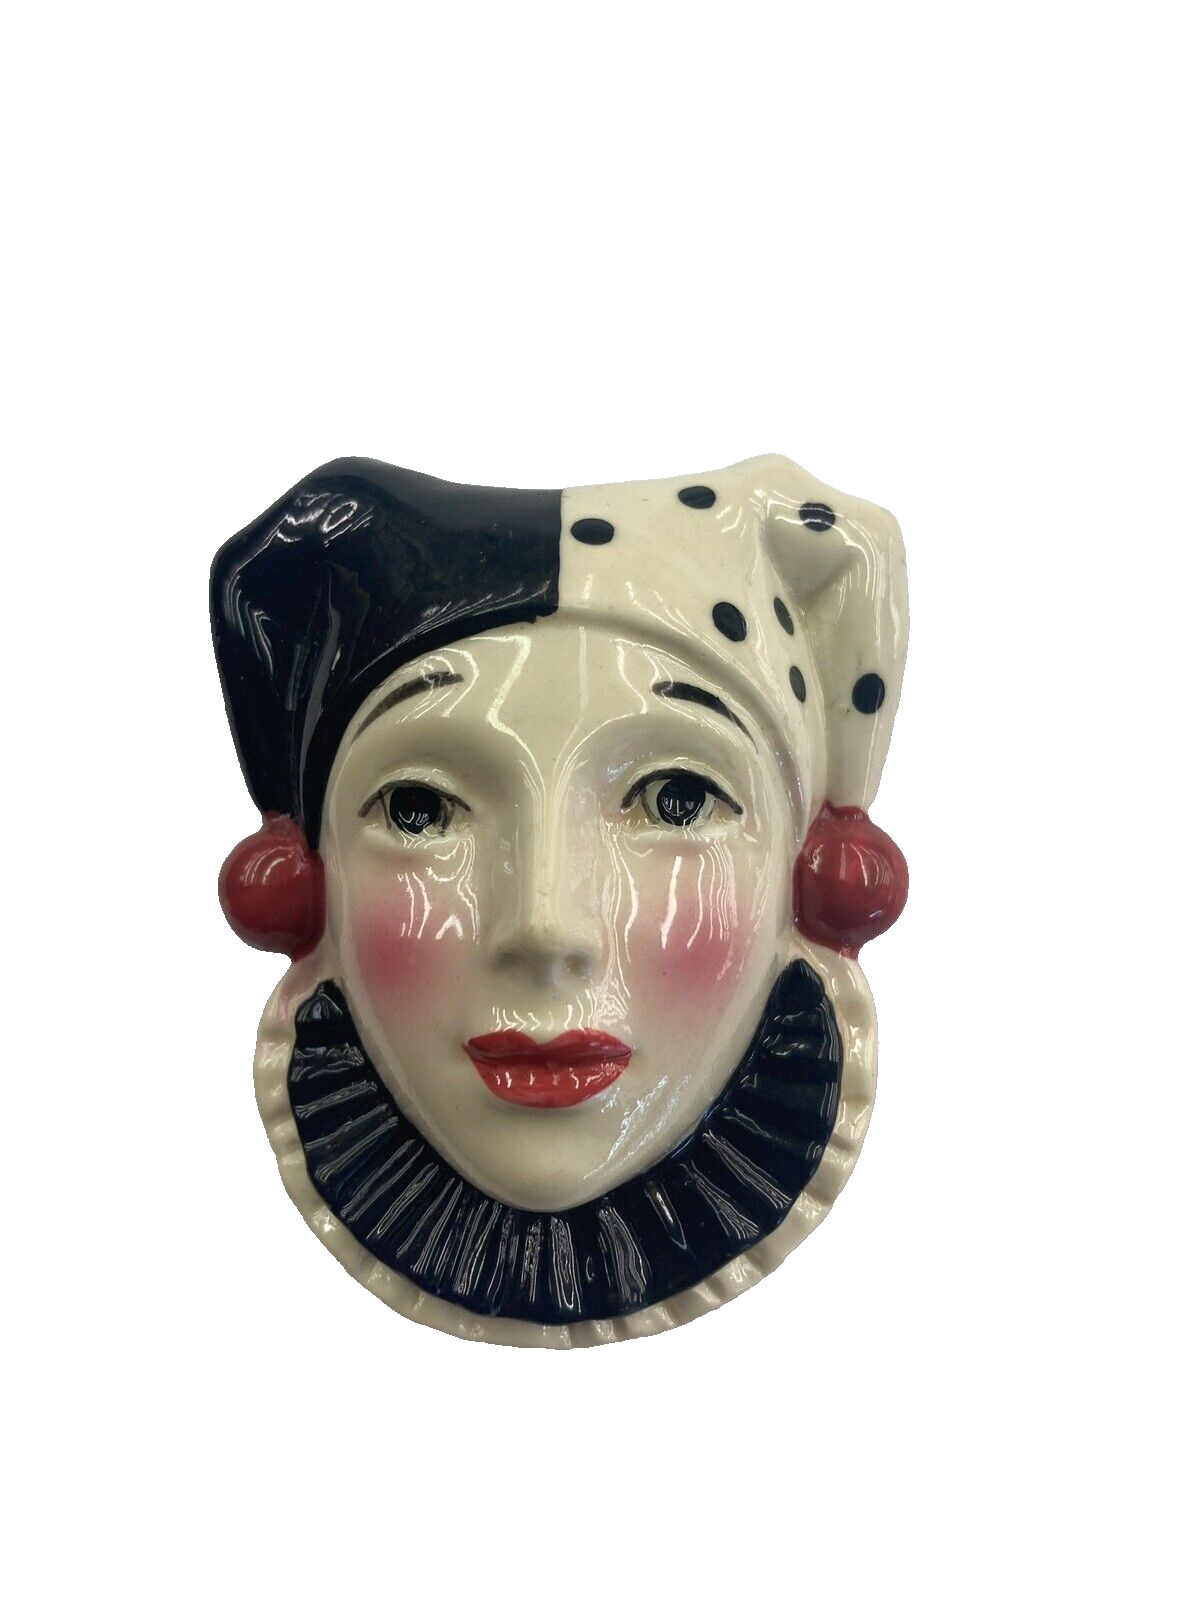 Vintage 1988 Enesco Hand Painted Magnet Porcelain Face Clown Fridge